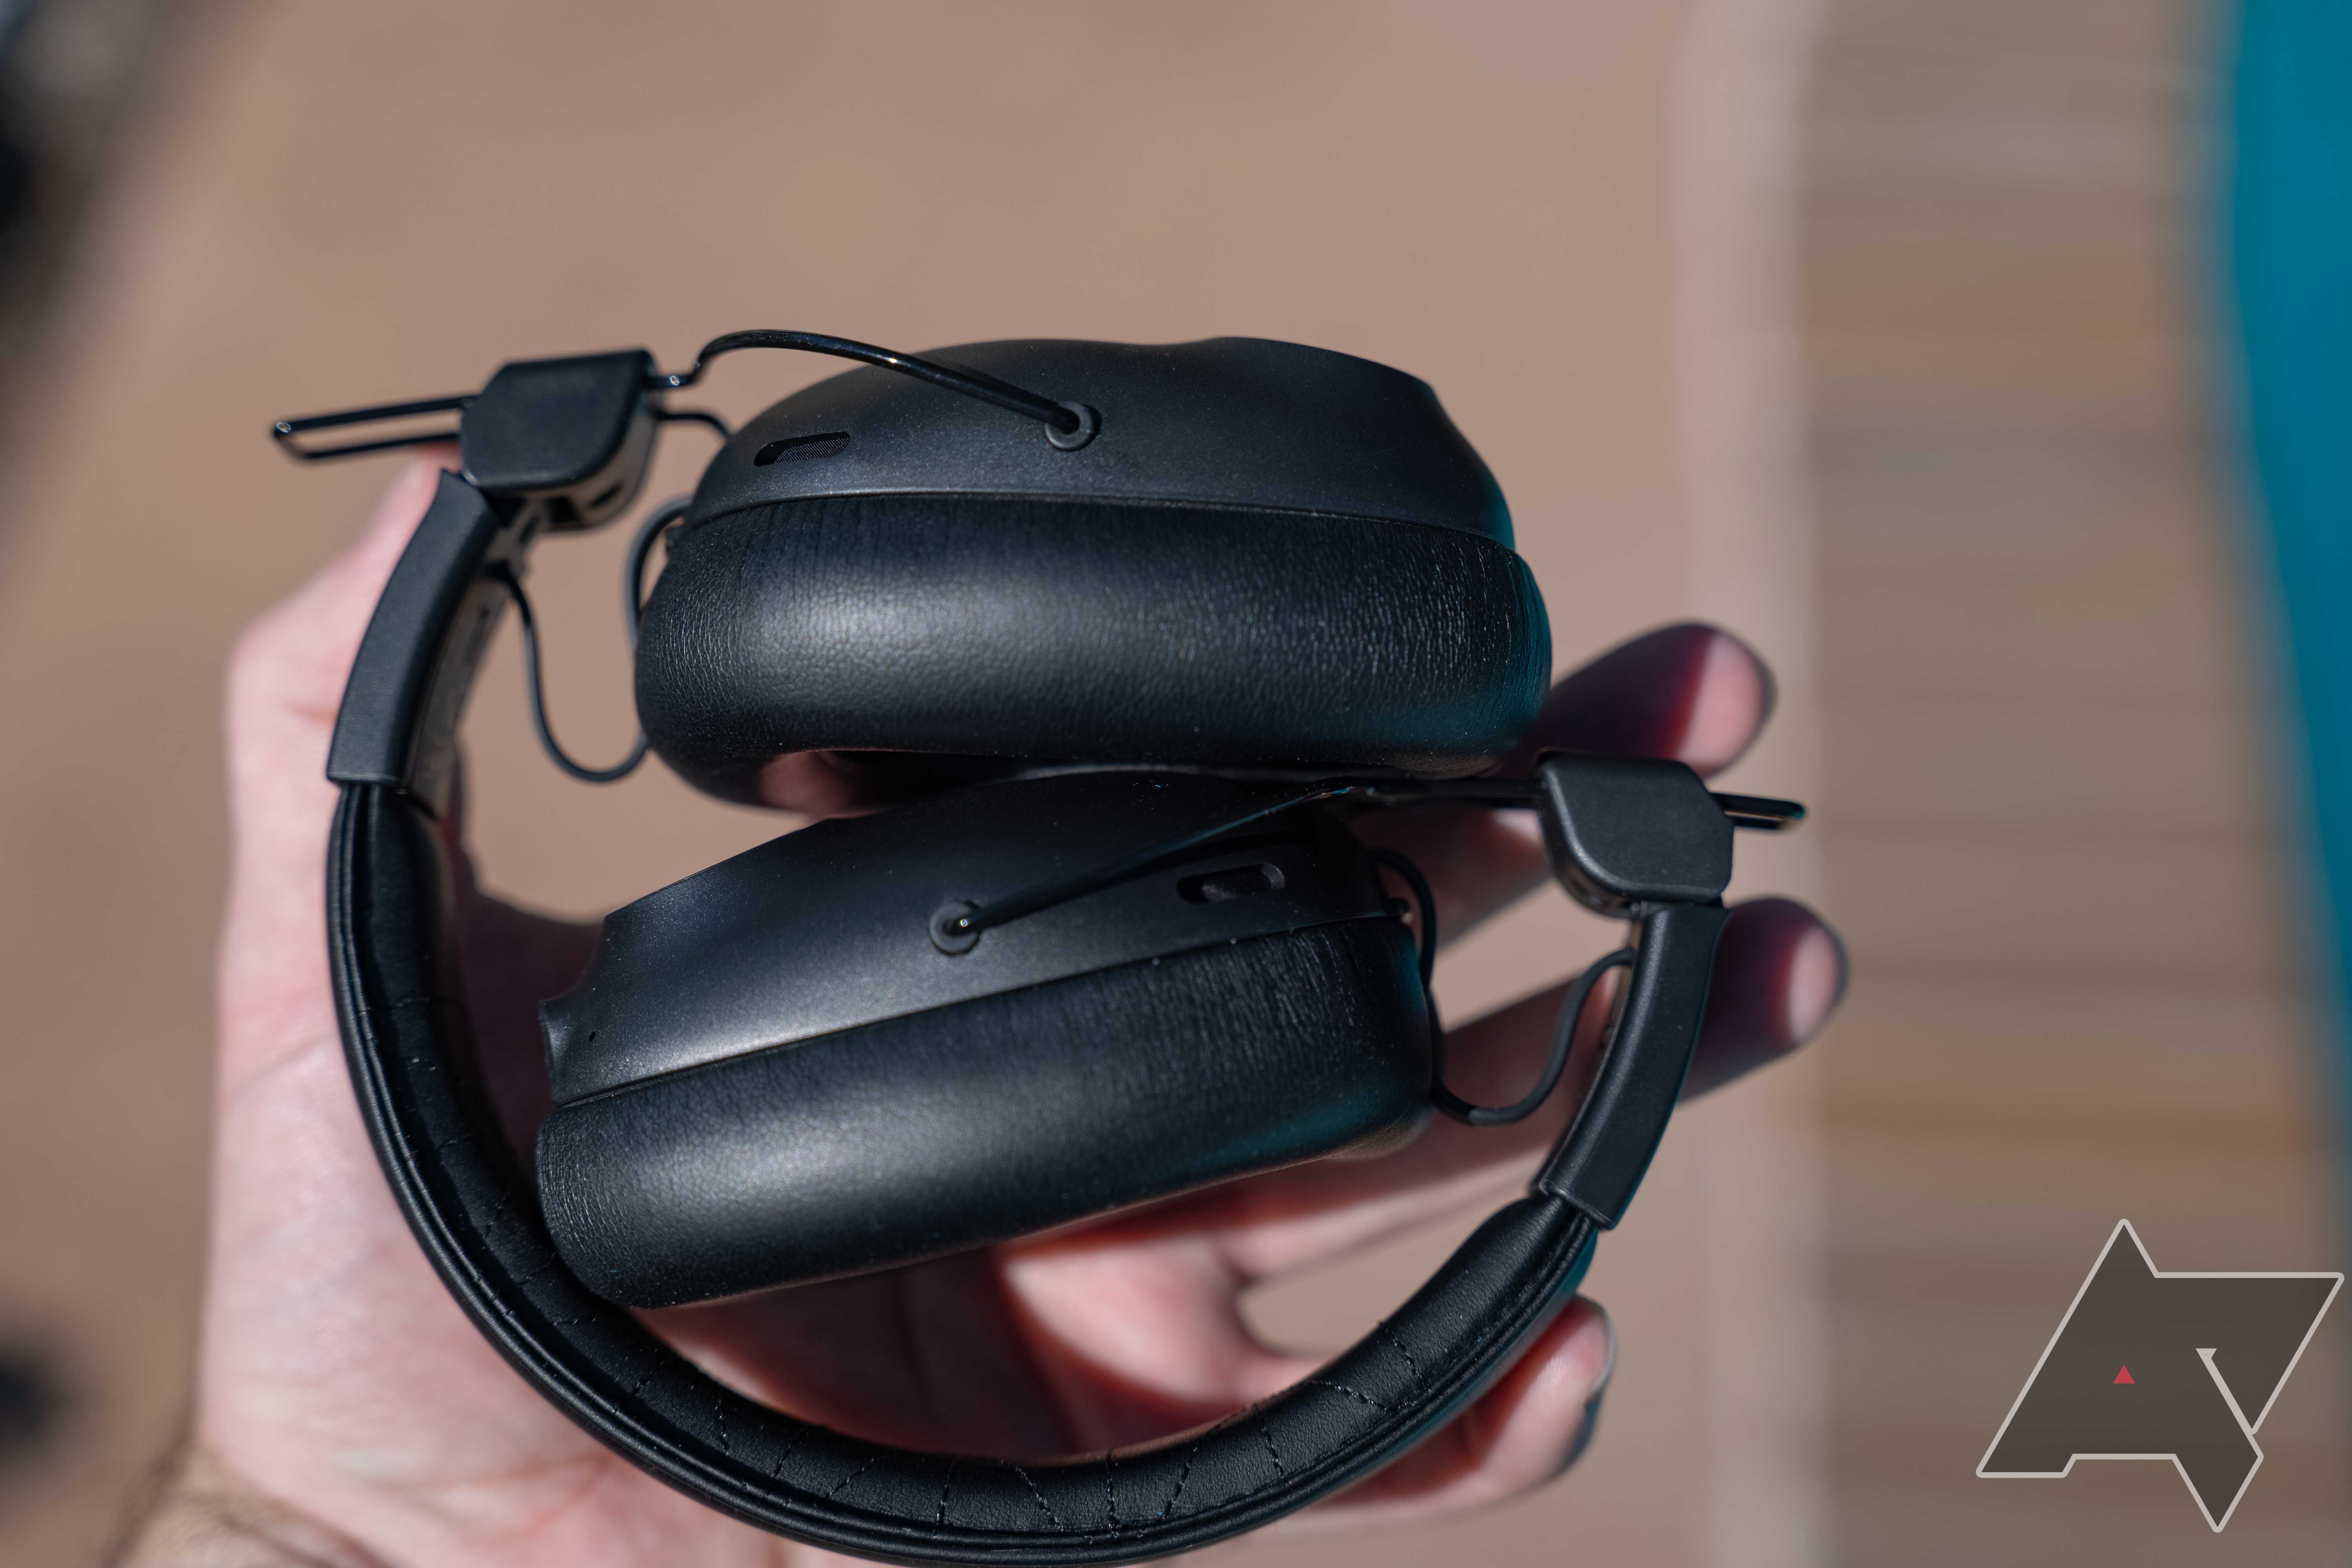 Os fones de ouvido JLab Studio Pro ANC dobrados para armazenamento na palma da mão